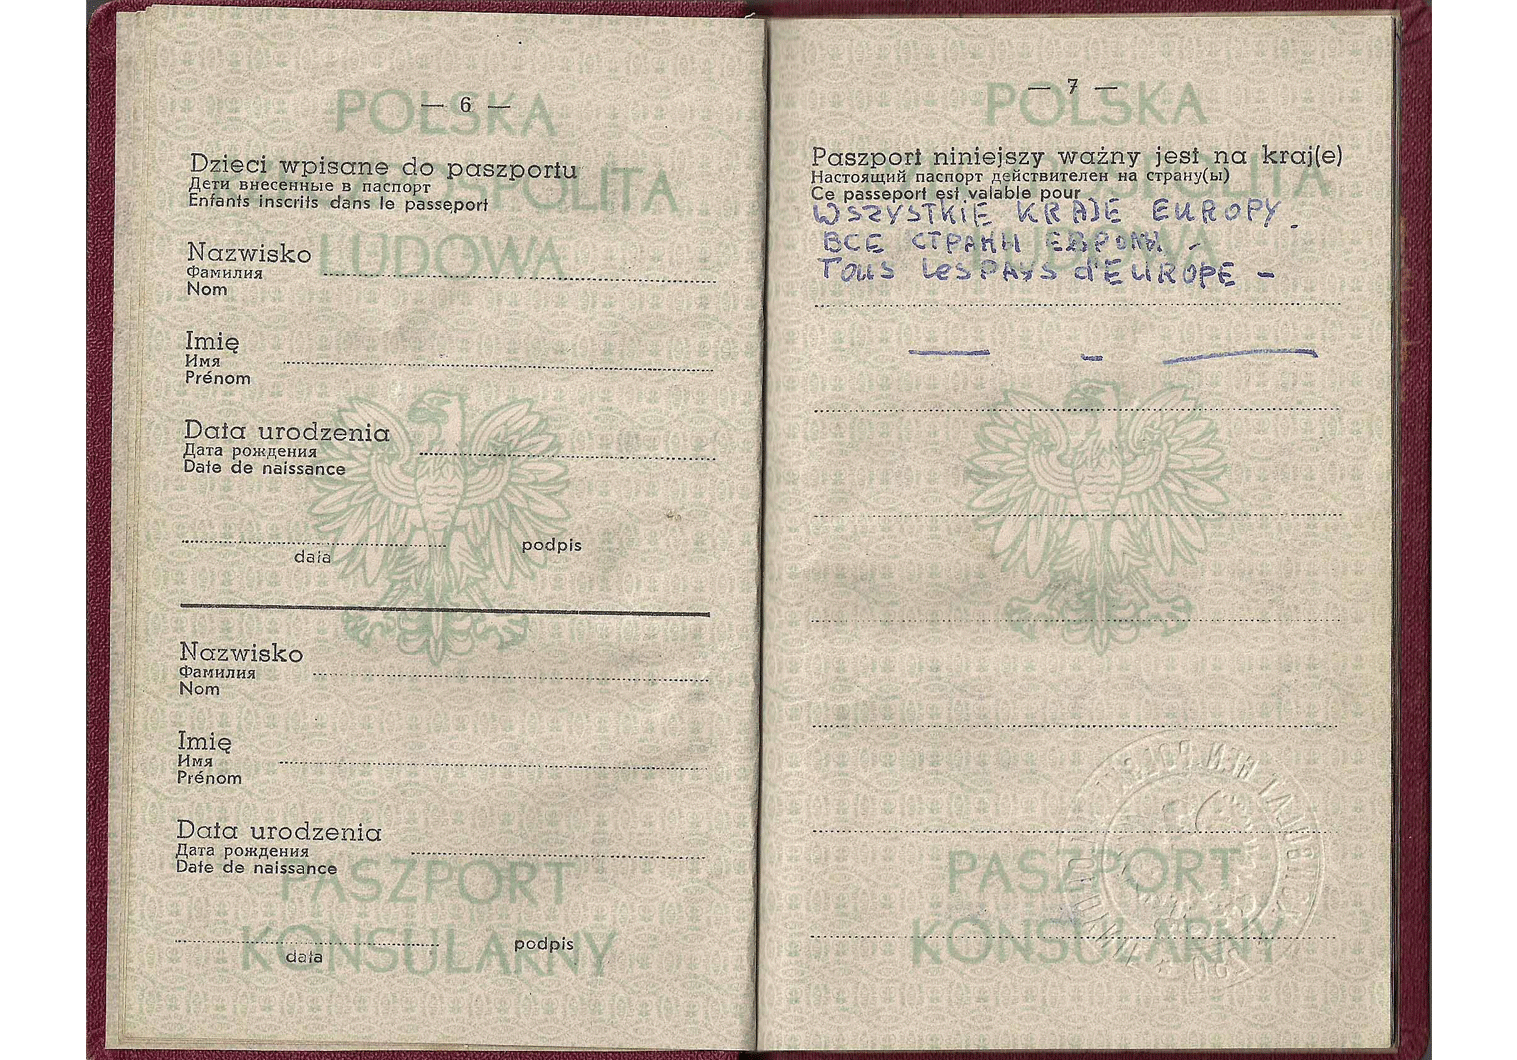 1958 Polish consular passport